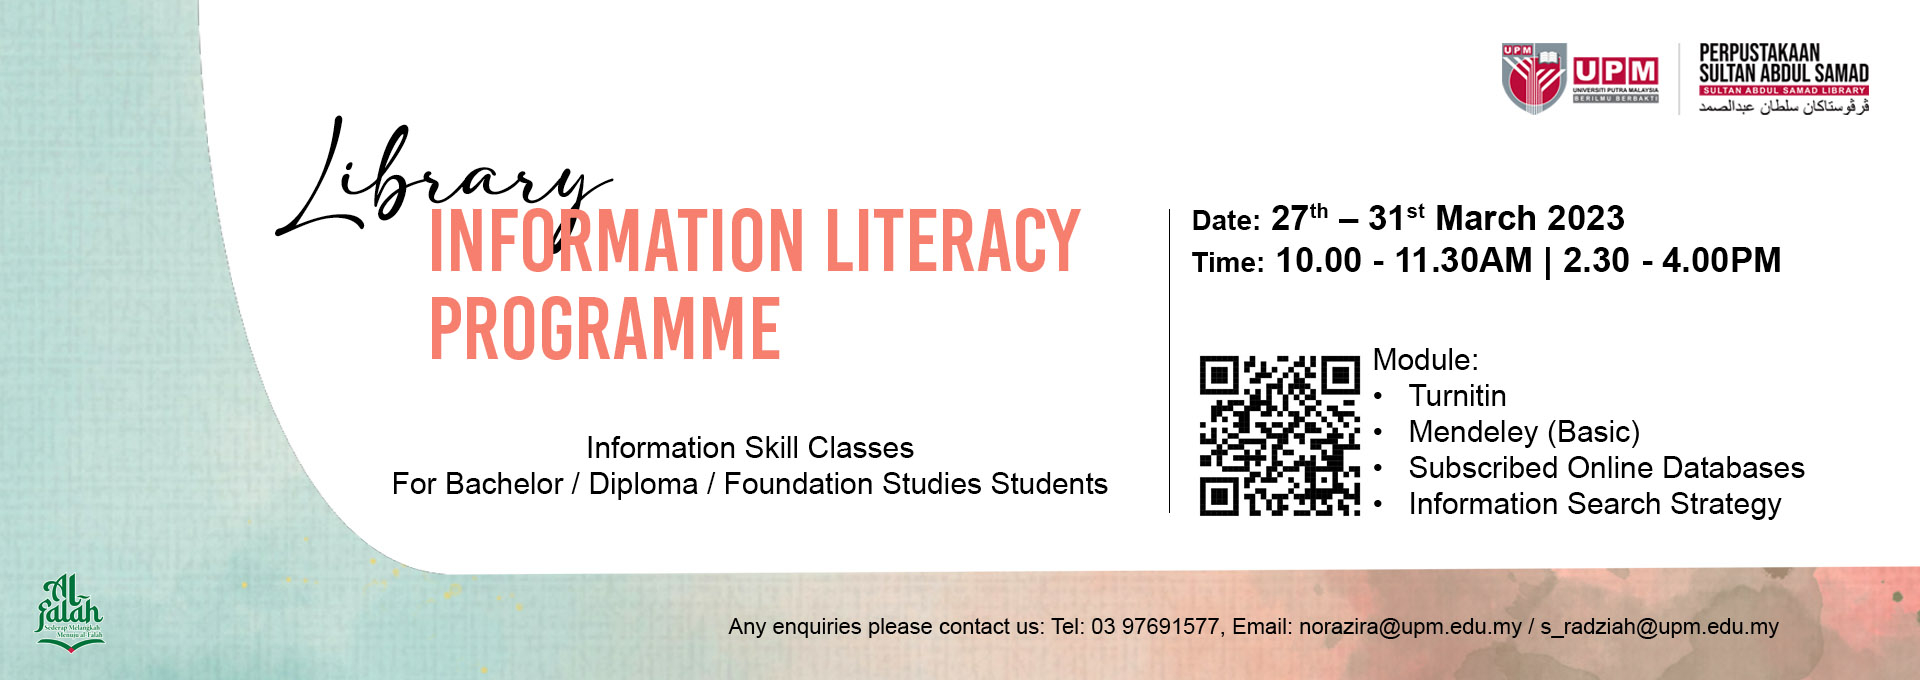 Program Literasi Maklumat: Kelas Kemahiran Maklumat bagi Pelajar (Bachelor/Diploma/Foundation Studies)